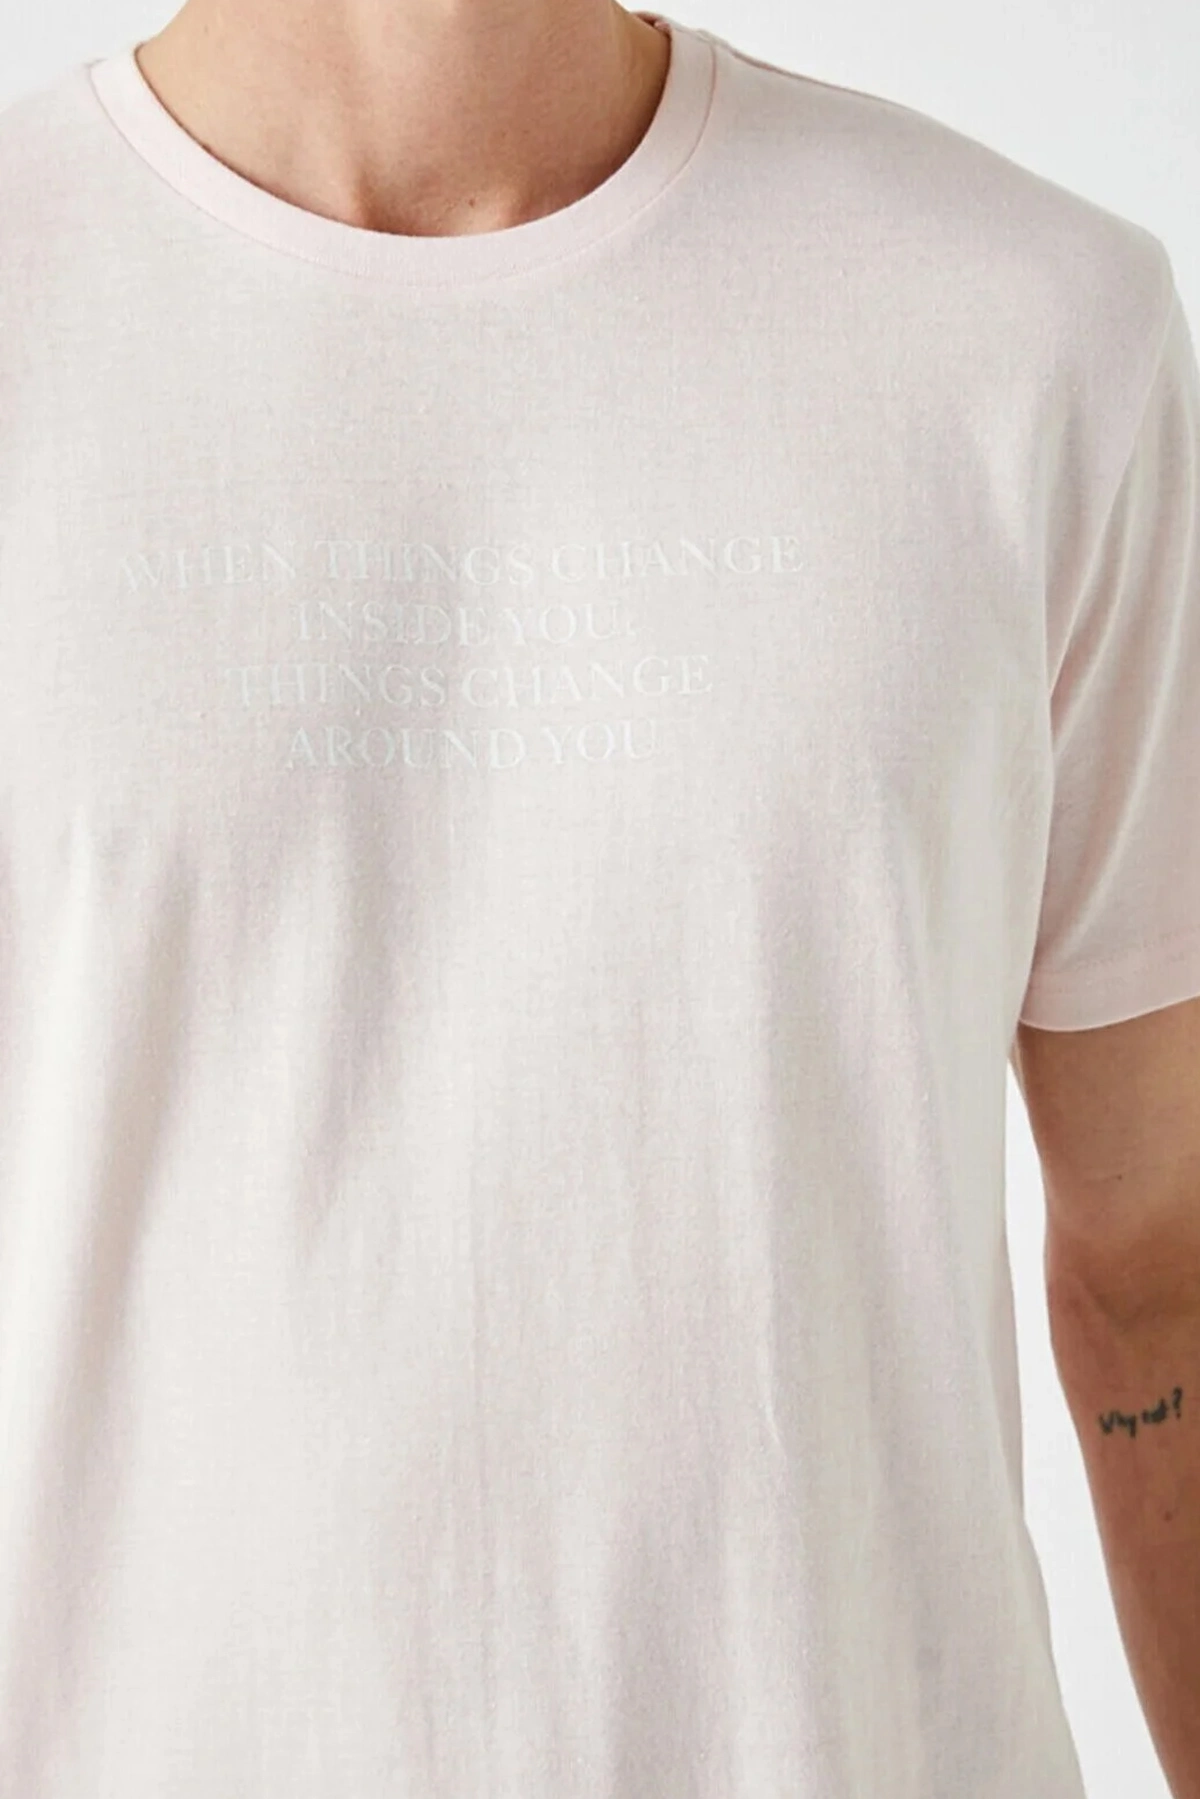 تیشرت یقه گرد چاپ دار مردانه صورتی روشن برند Koton